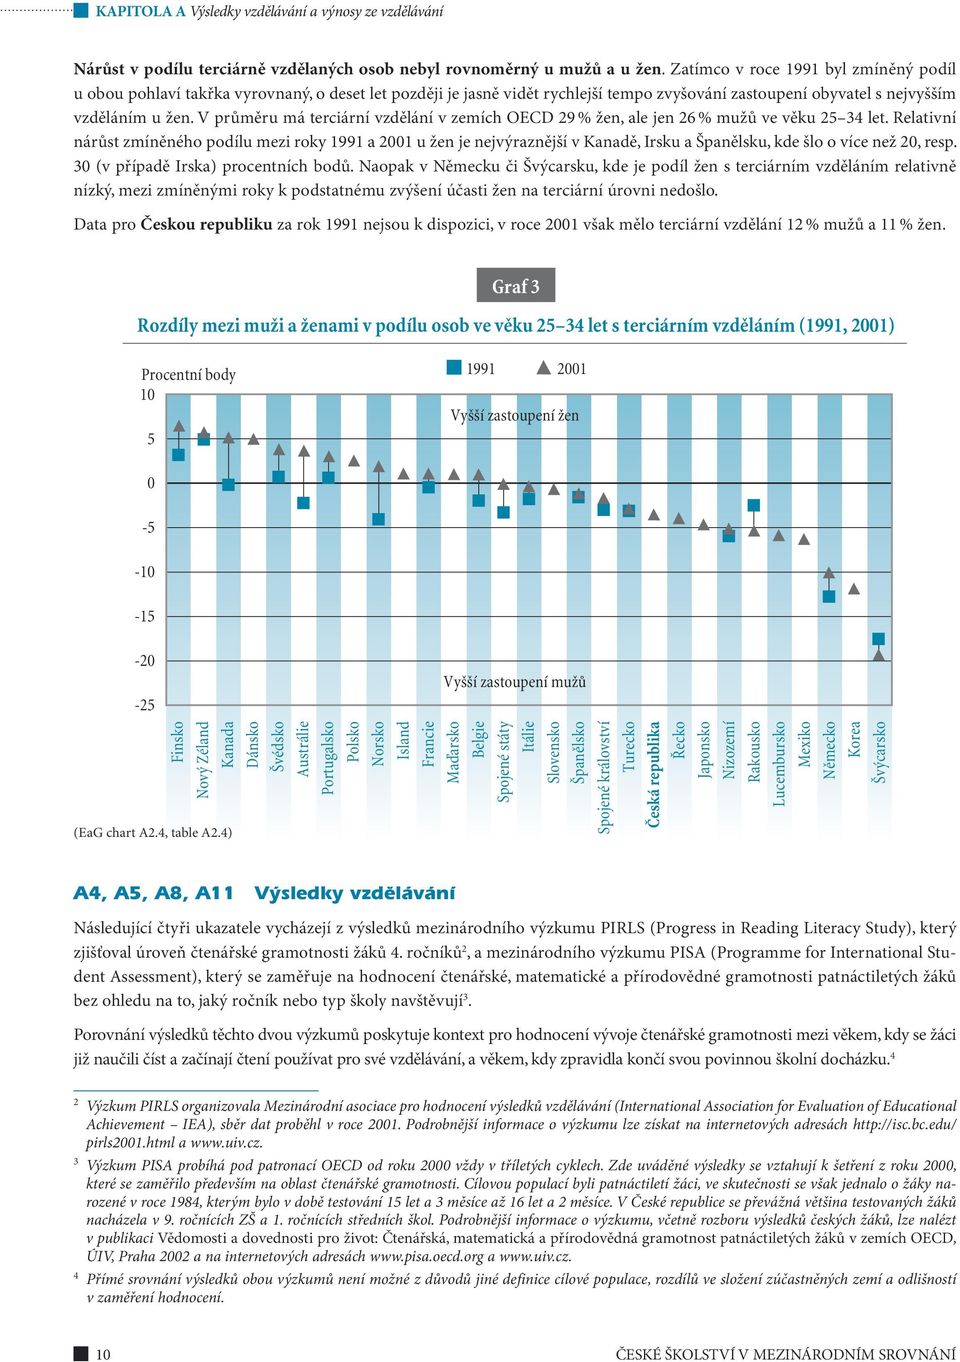 V průměru má terciární vzdělání v zemích OECD 29 % žen, ale jen 26 % mužů ve věku 25 34 let.